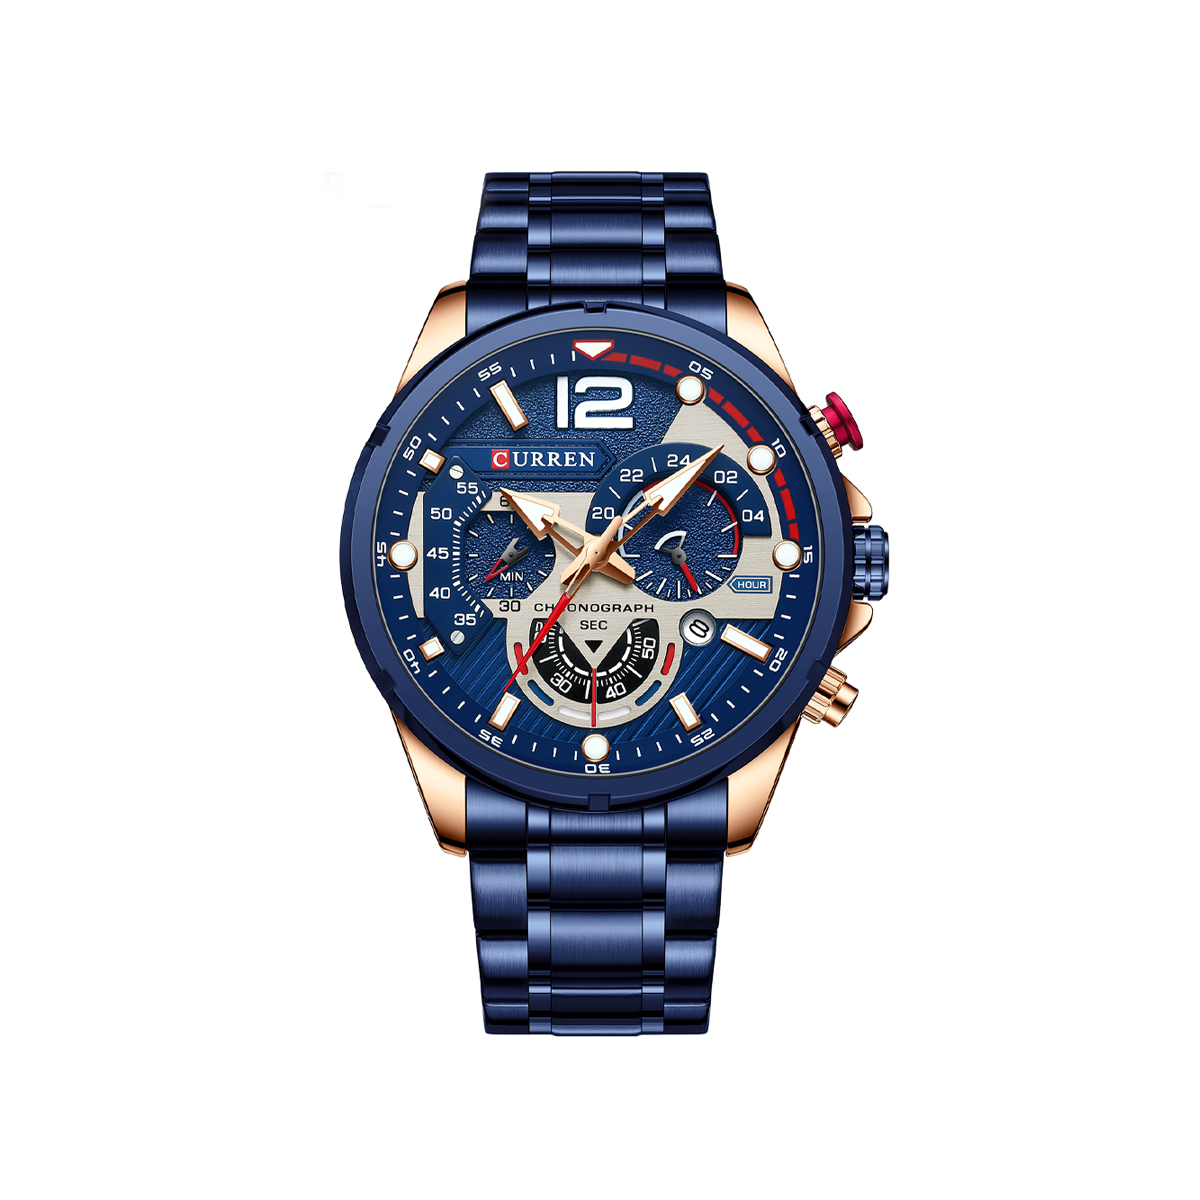 CURREN 8395 Luxury Brand Watch for Men – Blue